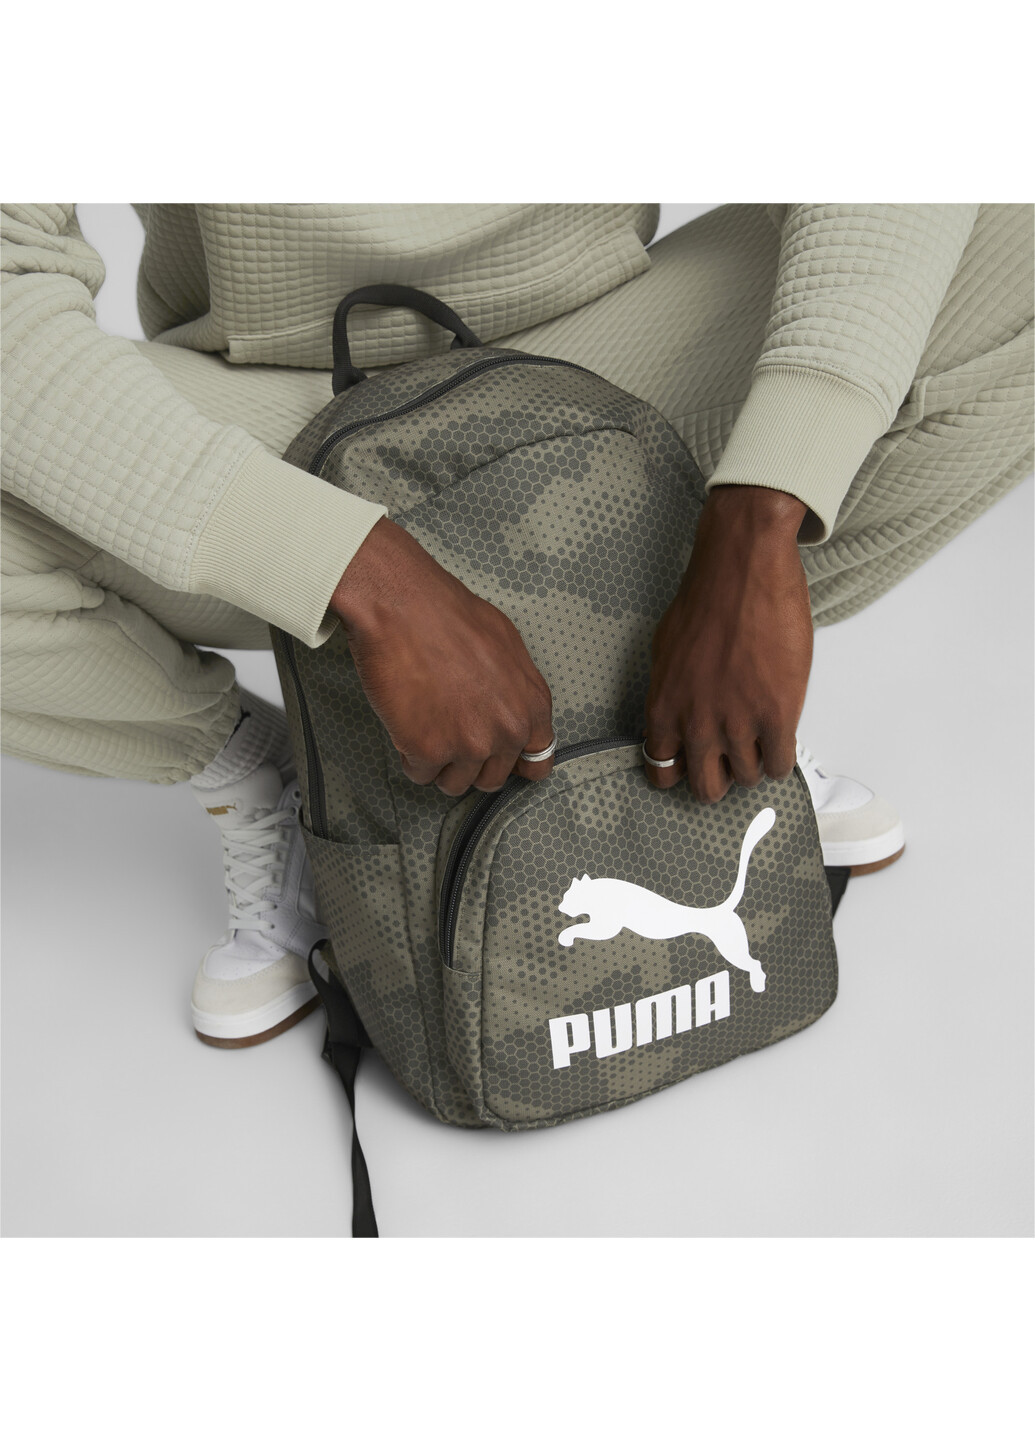 Рюкзак Originals Urban Backpack Puma однотонный зелёный спортивный